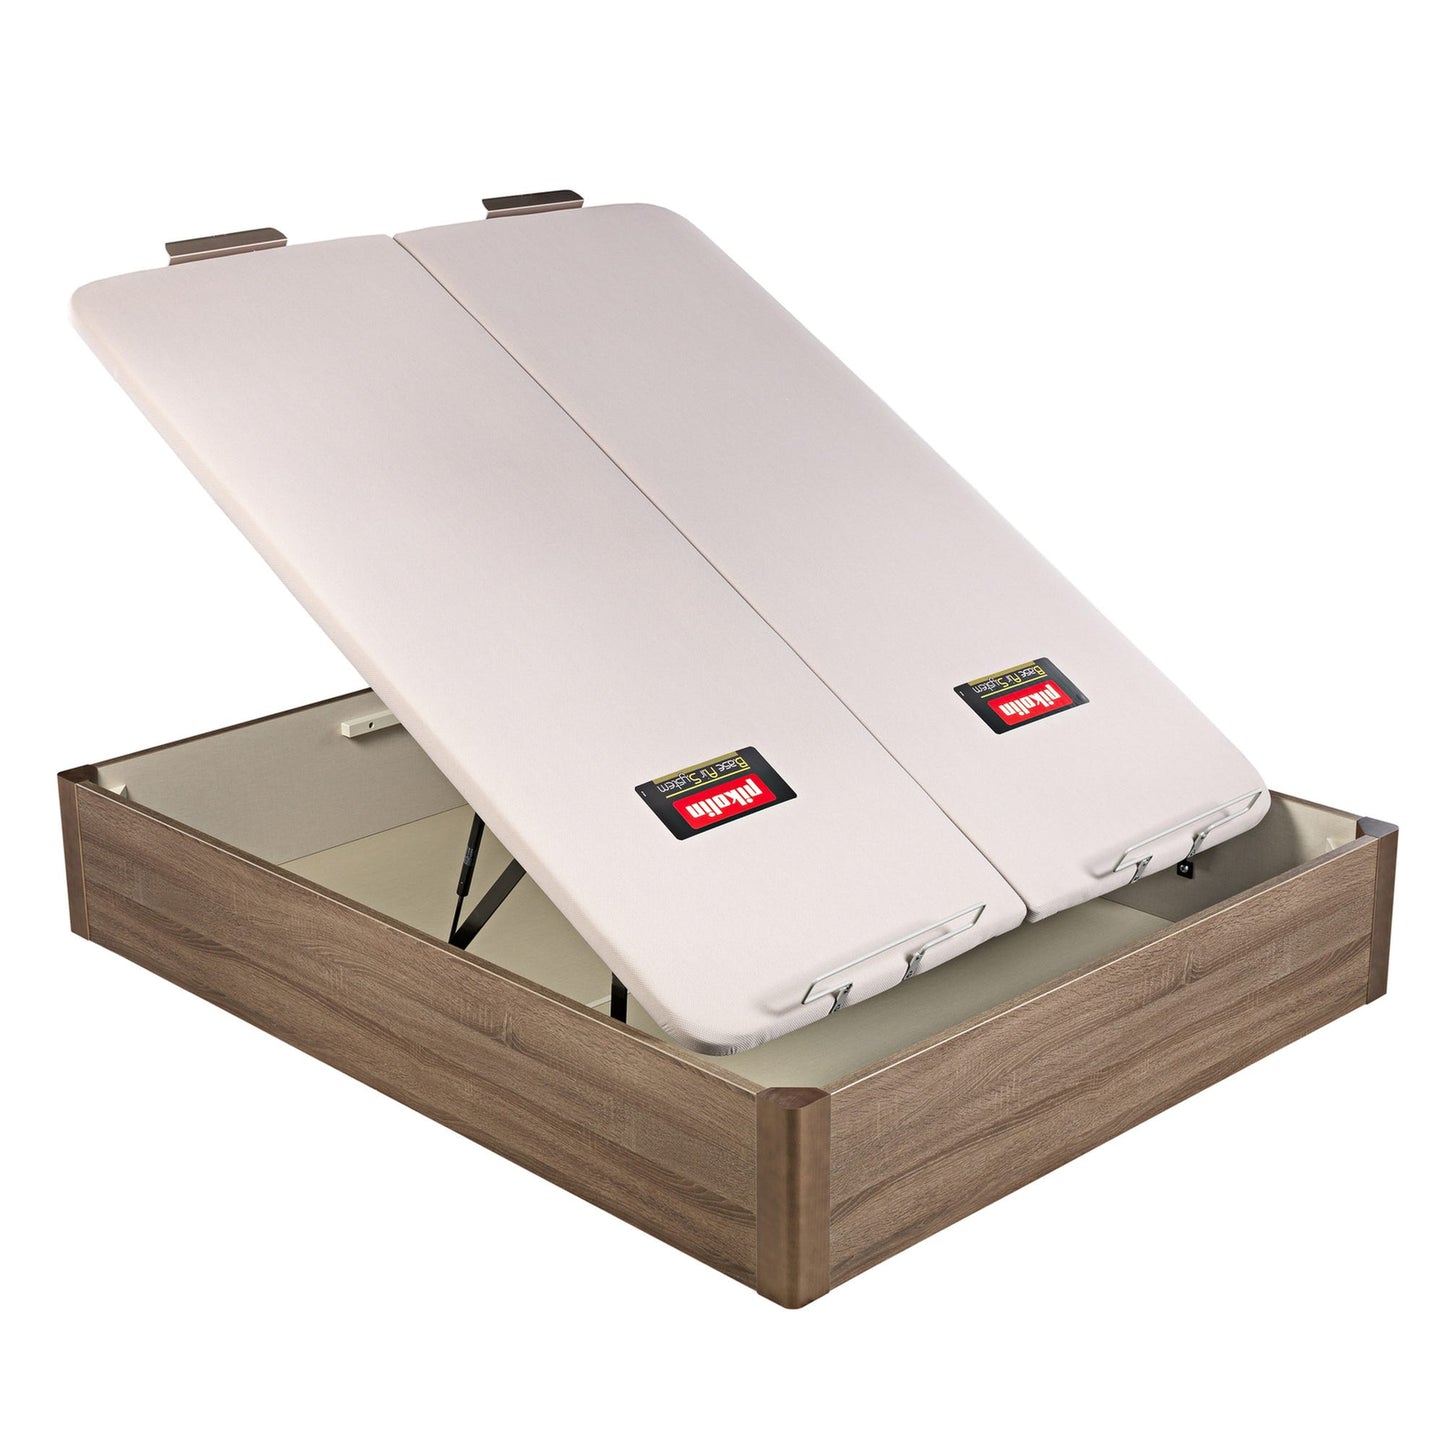 Canapé abatible de madera de tapa doble de color roble - DESIGN - 150x210